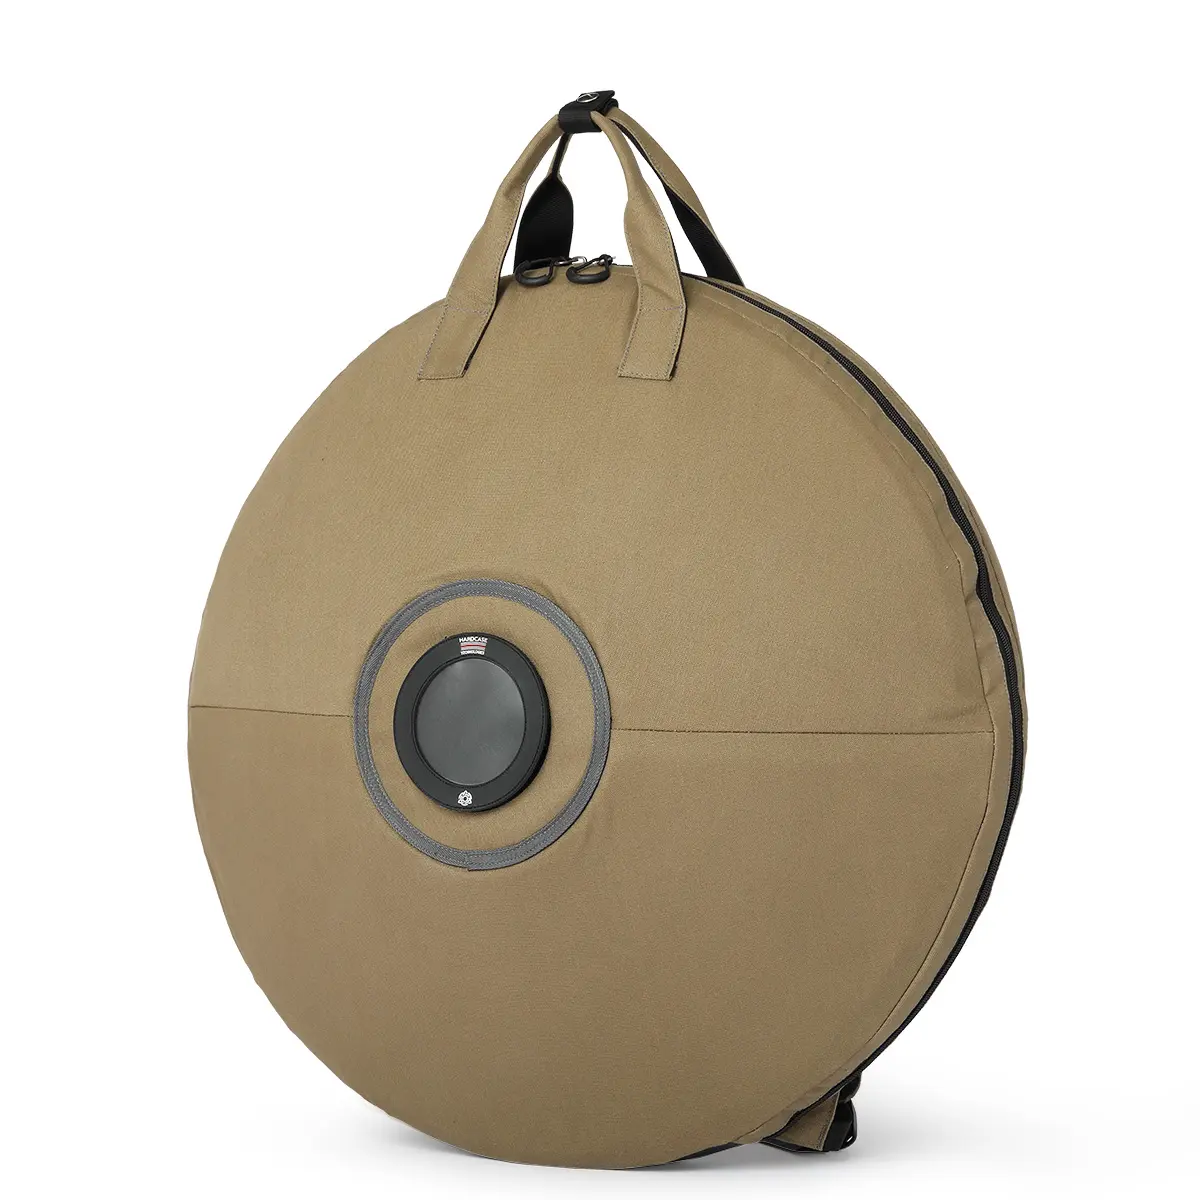 Yumuşak çanta sadece 2.0 mat turuncu büyük boy çelik dil davul perküsyon aletleri ile ücretsiz çanta ve Drumsticks